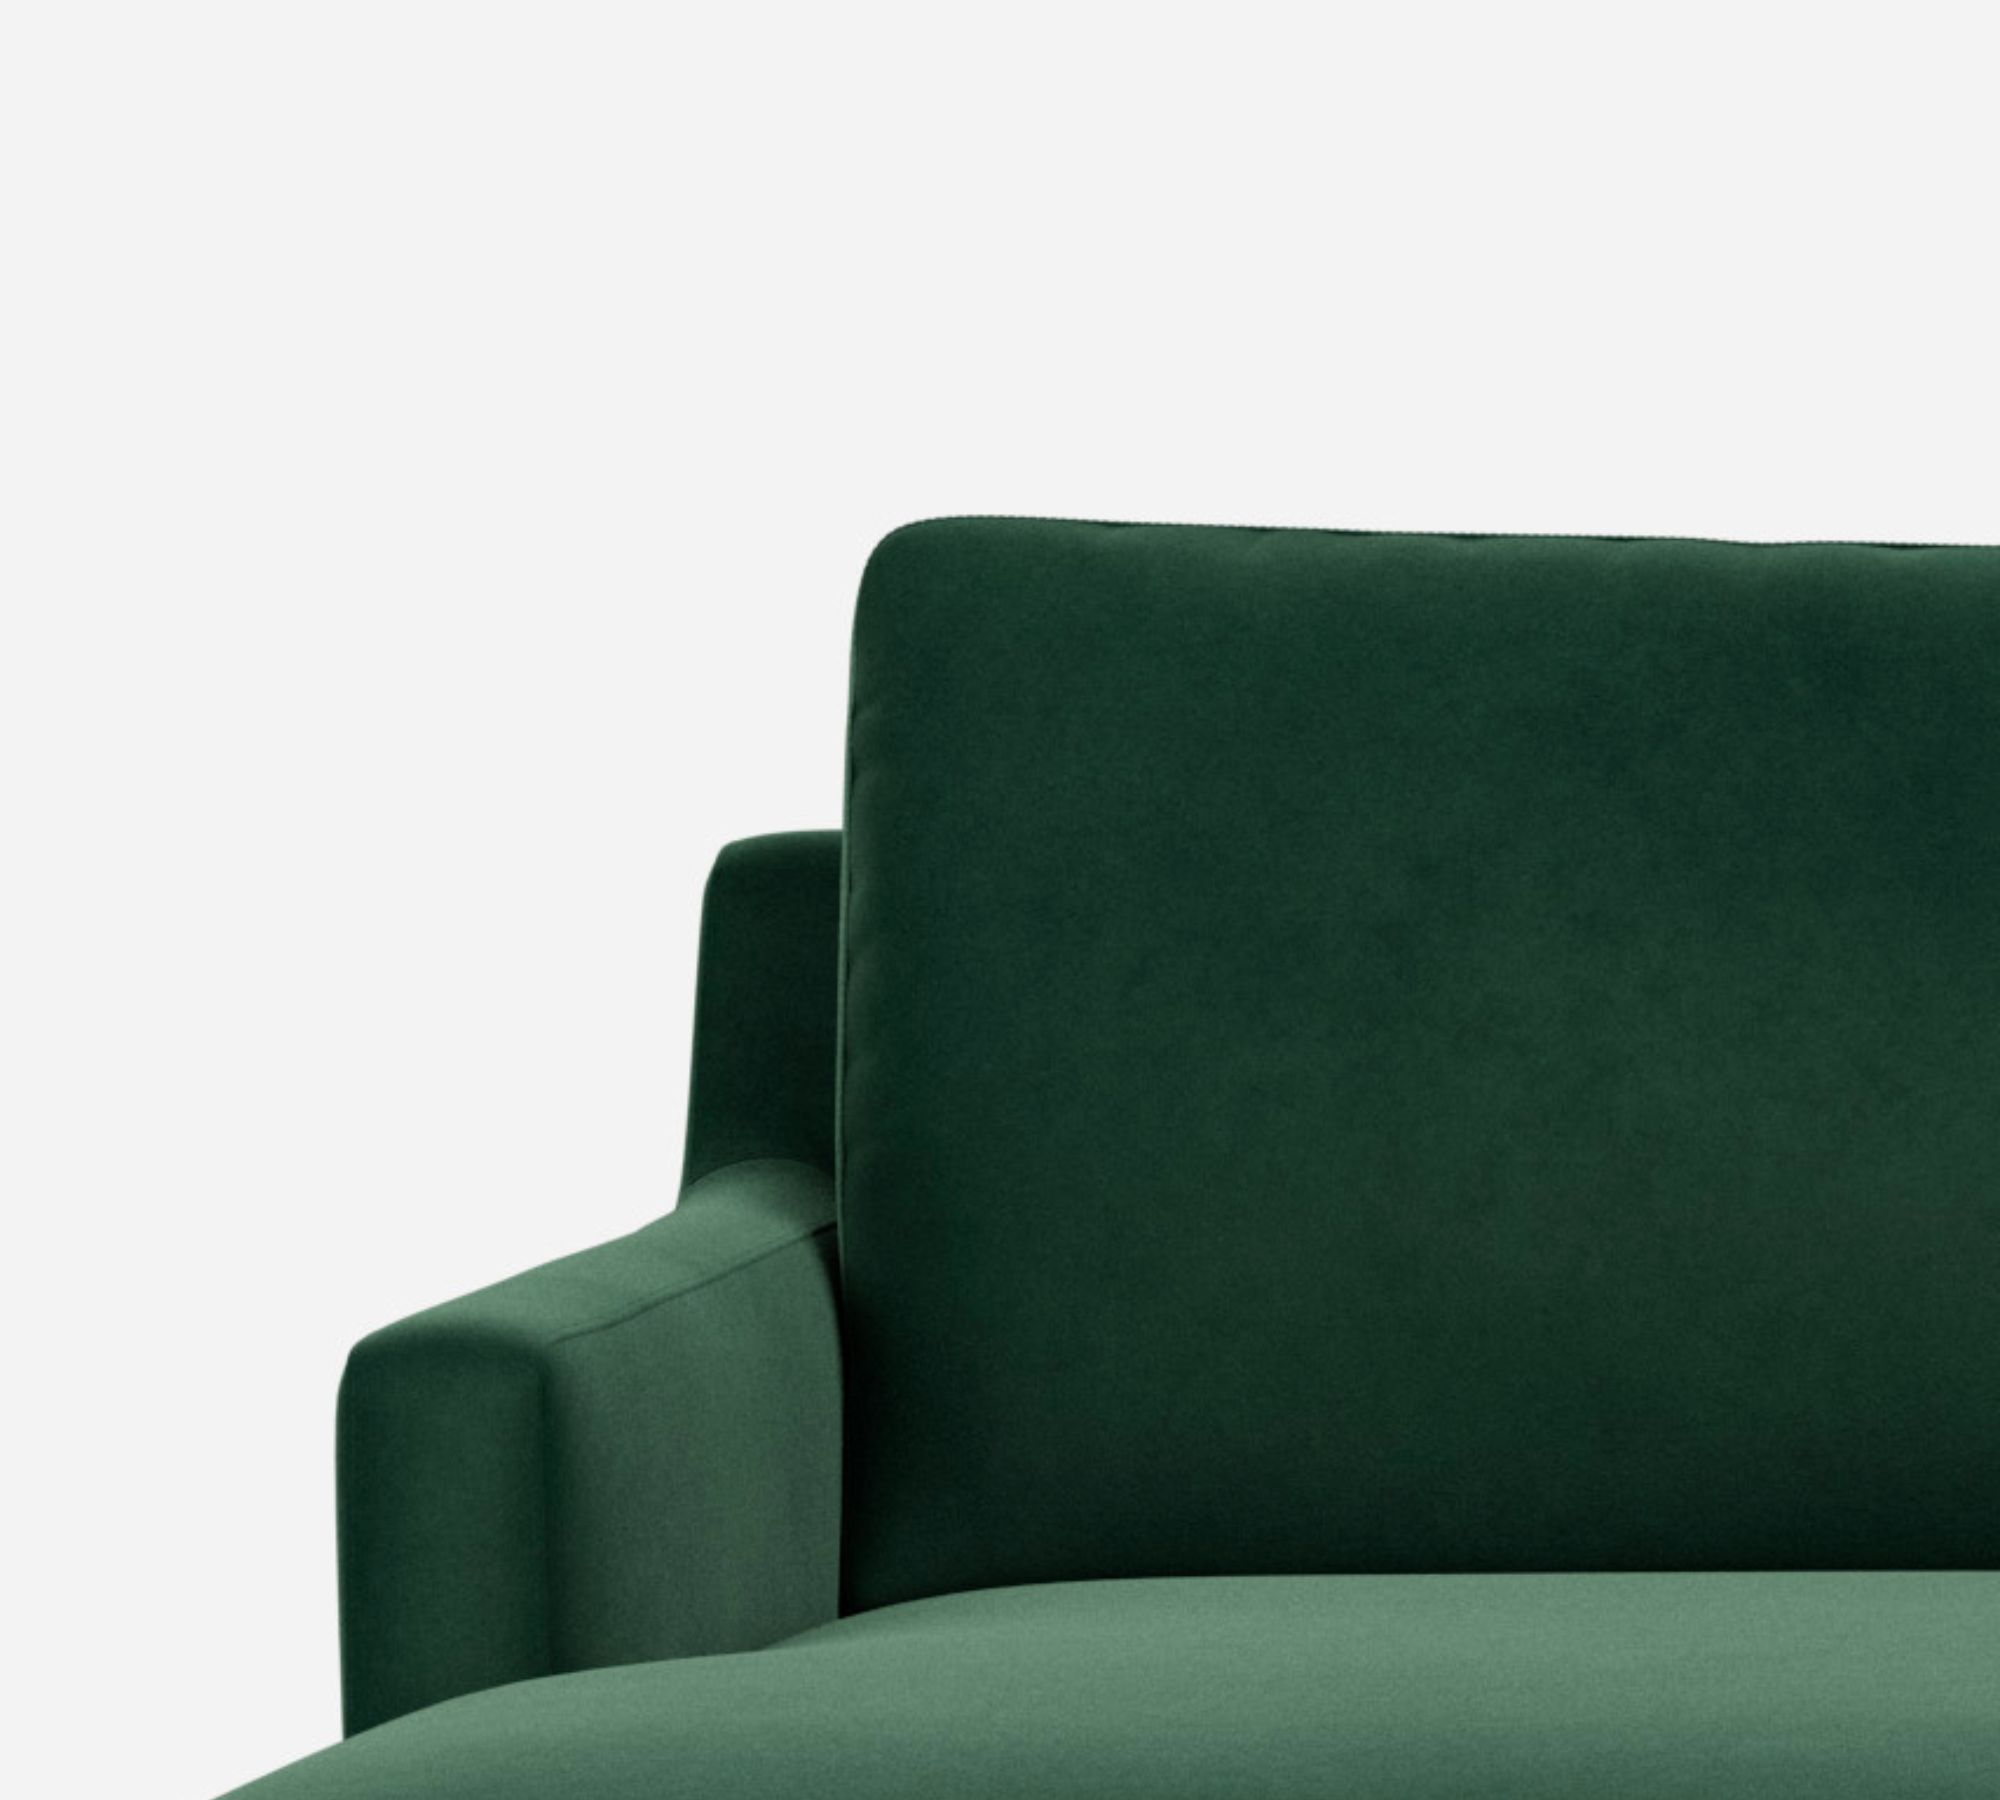 Astha 3-Sitzer Sofa Récamiere Links Velour Lux Dark Green